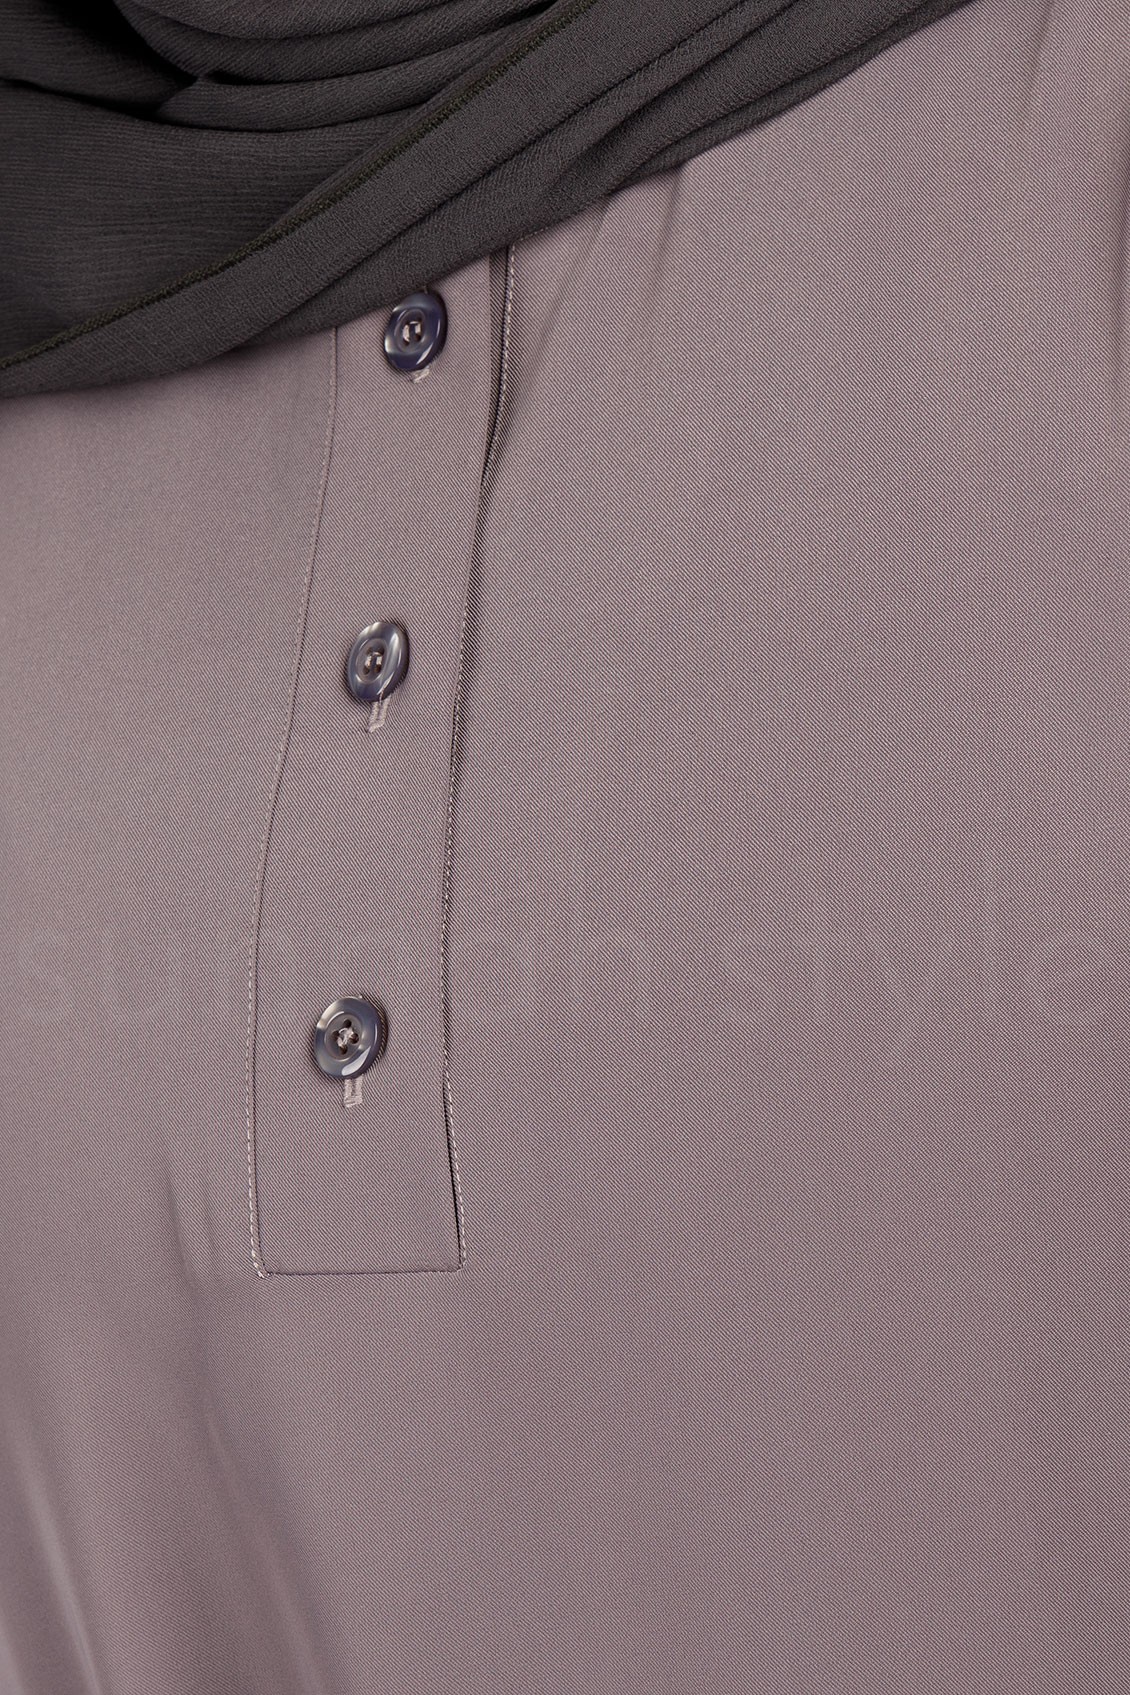 Sunnah Style Pearl Button Cuff Abaya Orchid Grey